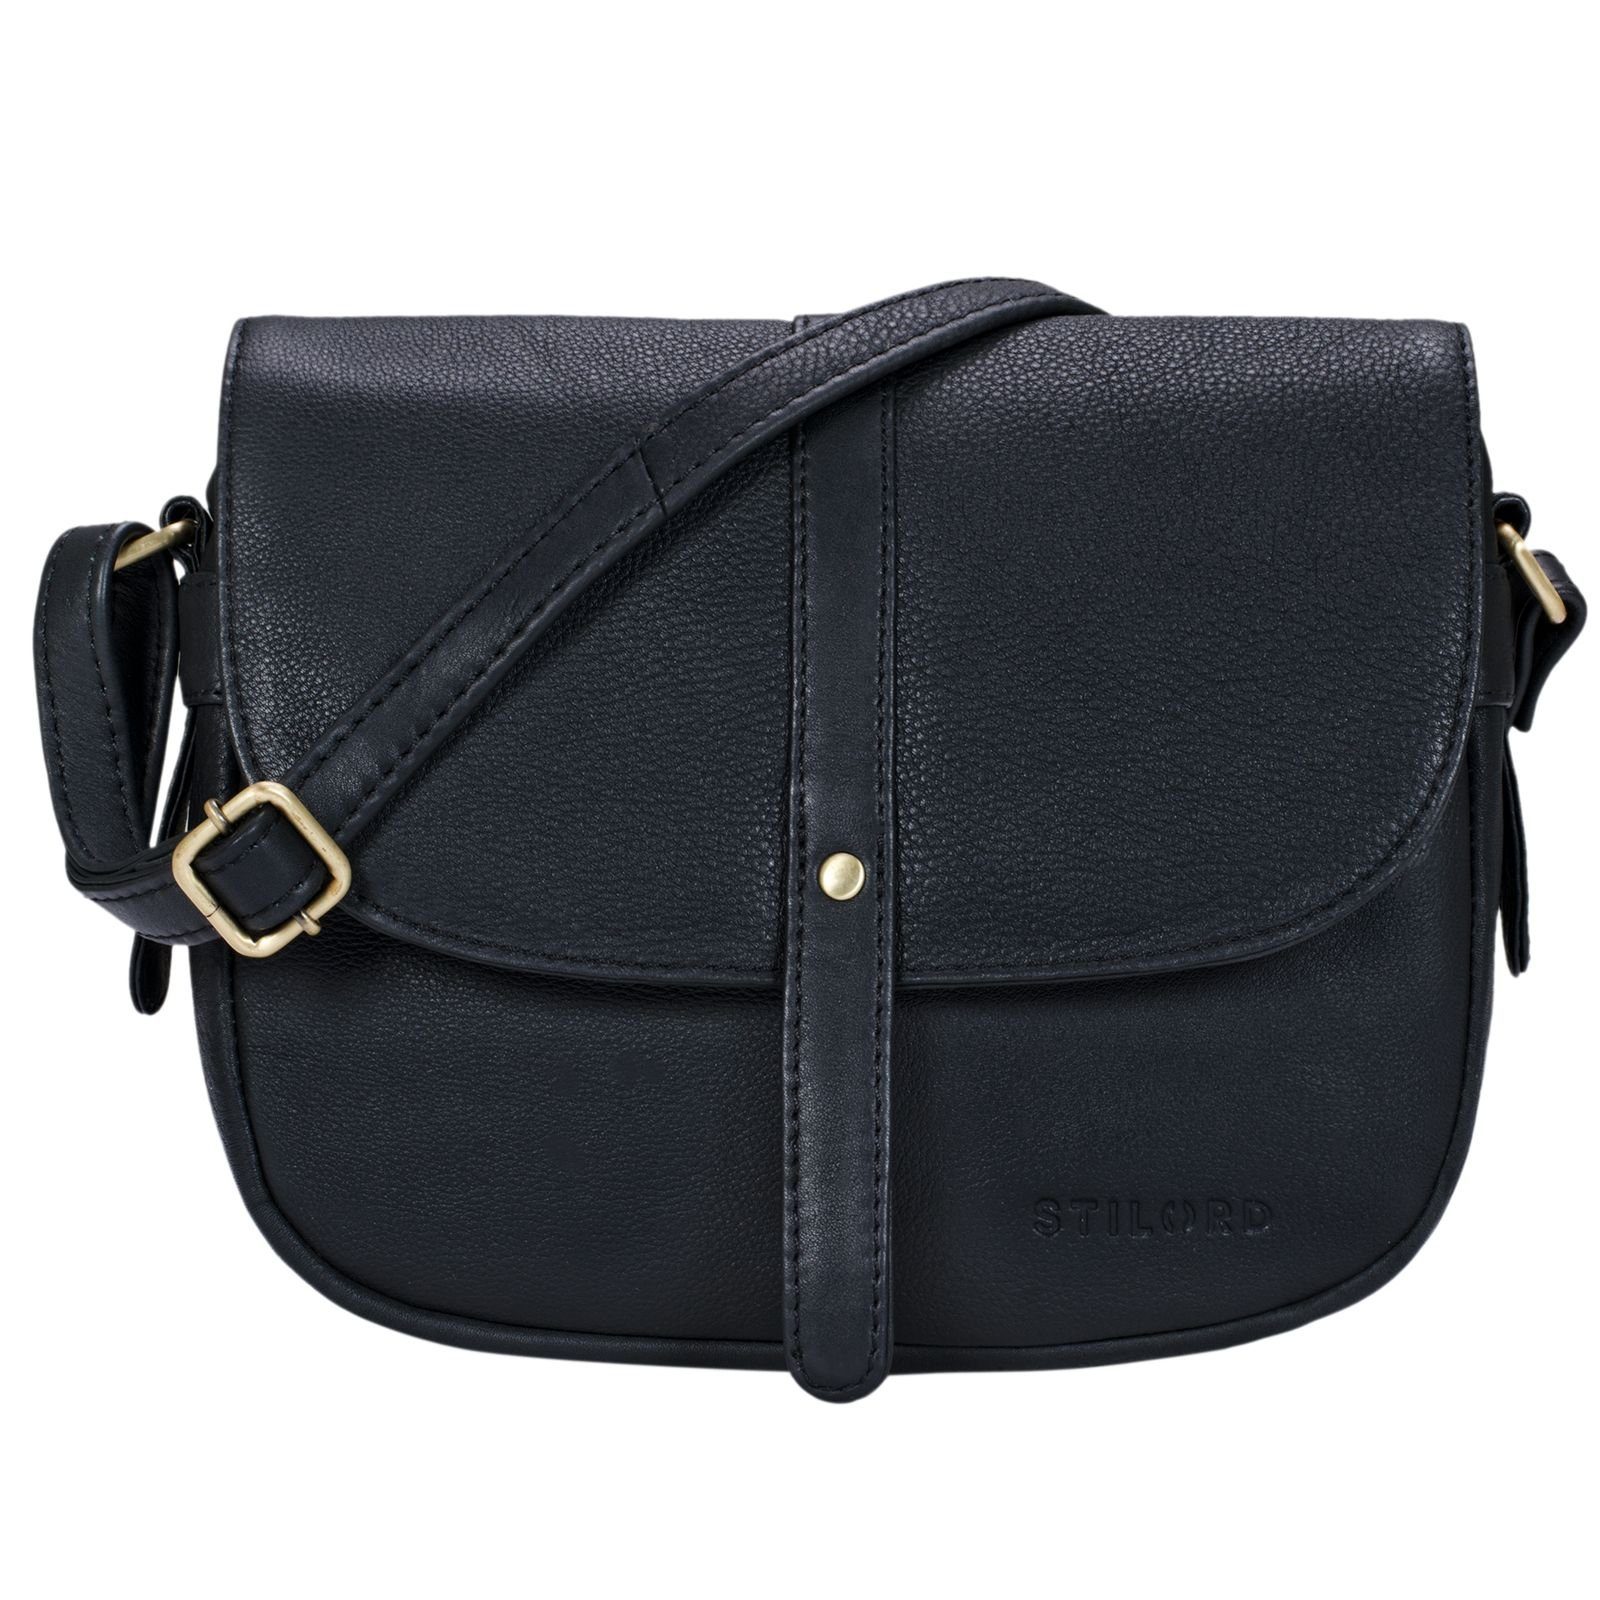 STILORD Handtasche "Kira" Umhängetasche Frauen Leder Vintage schwarz